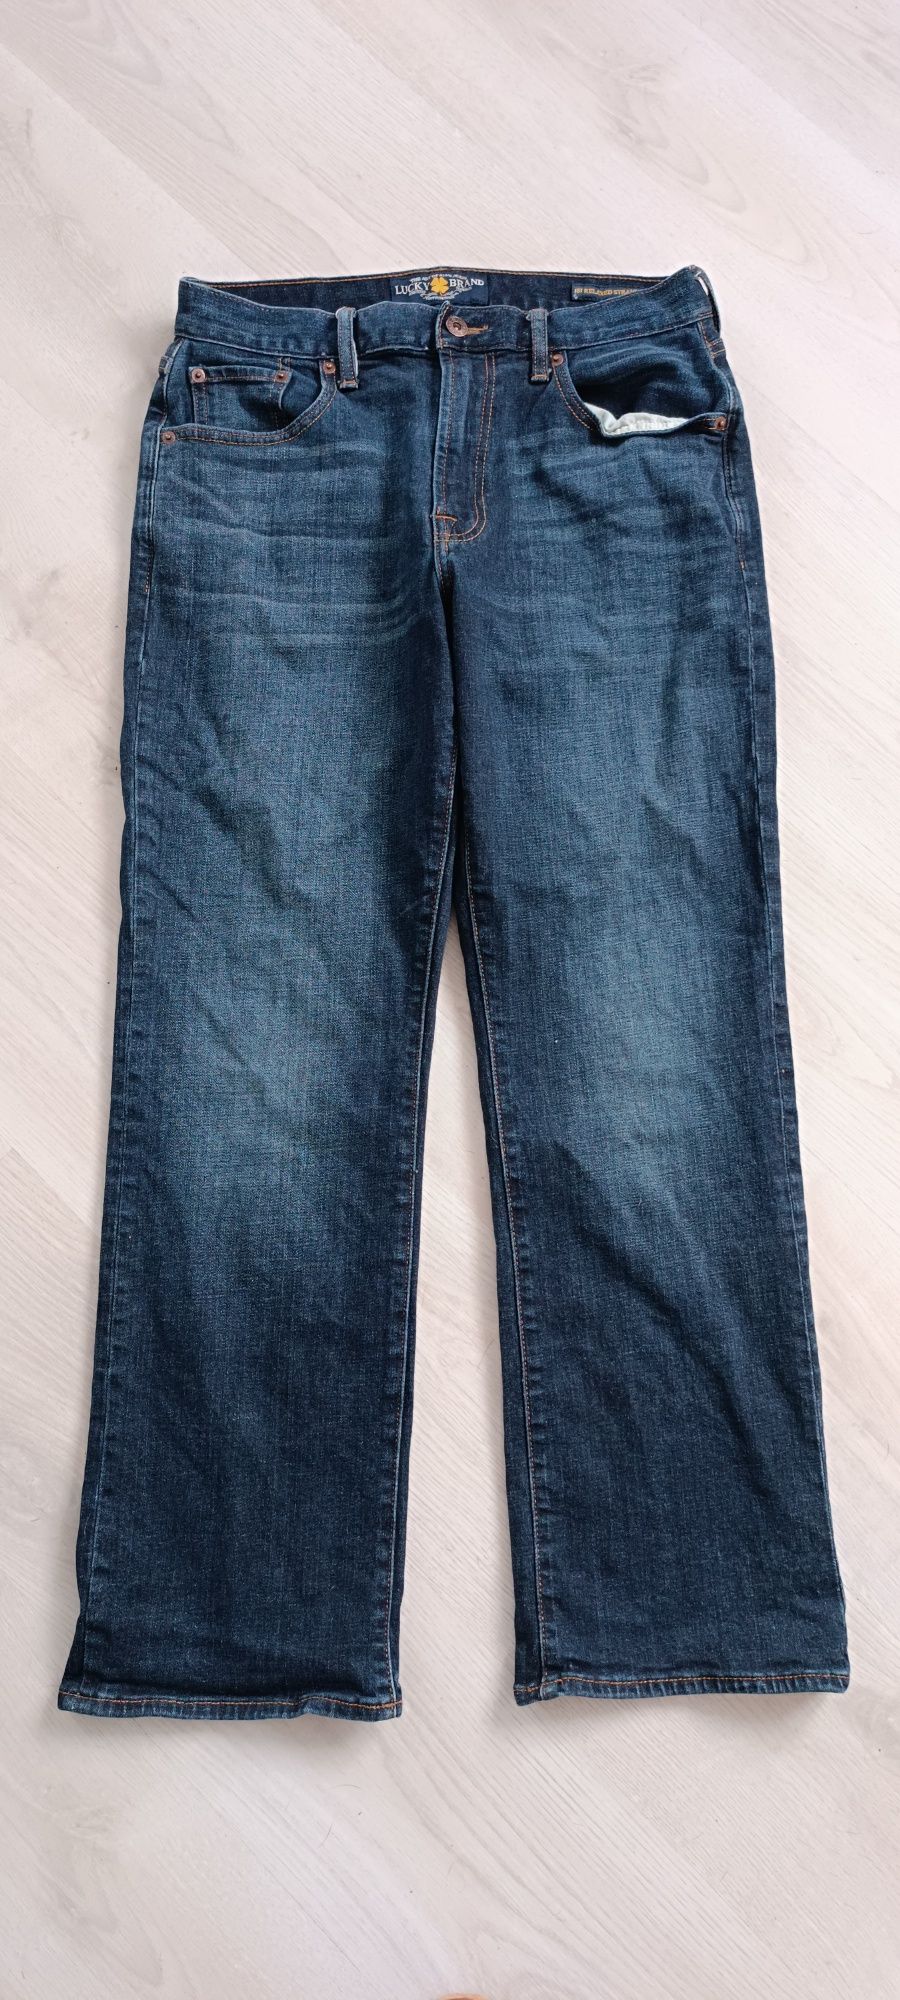 Spodnie jeansowe Lucky Brand roz 31x30